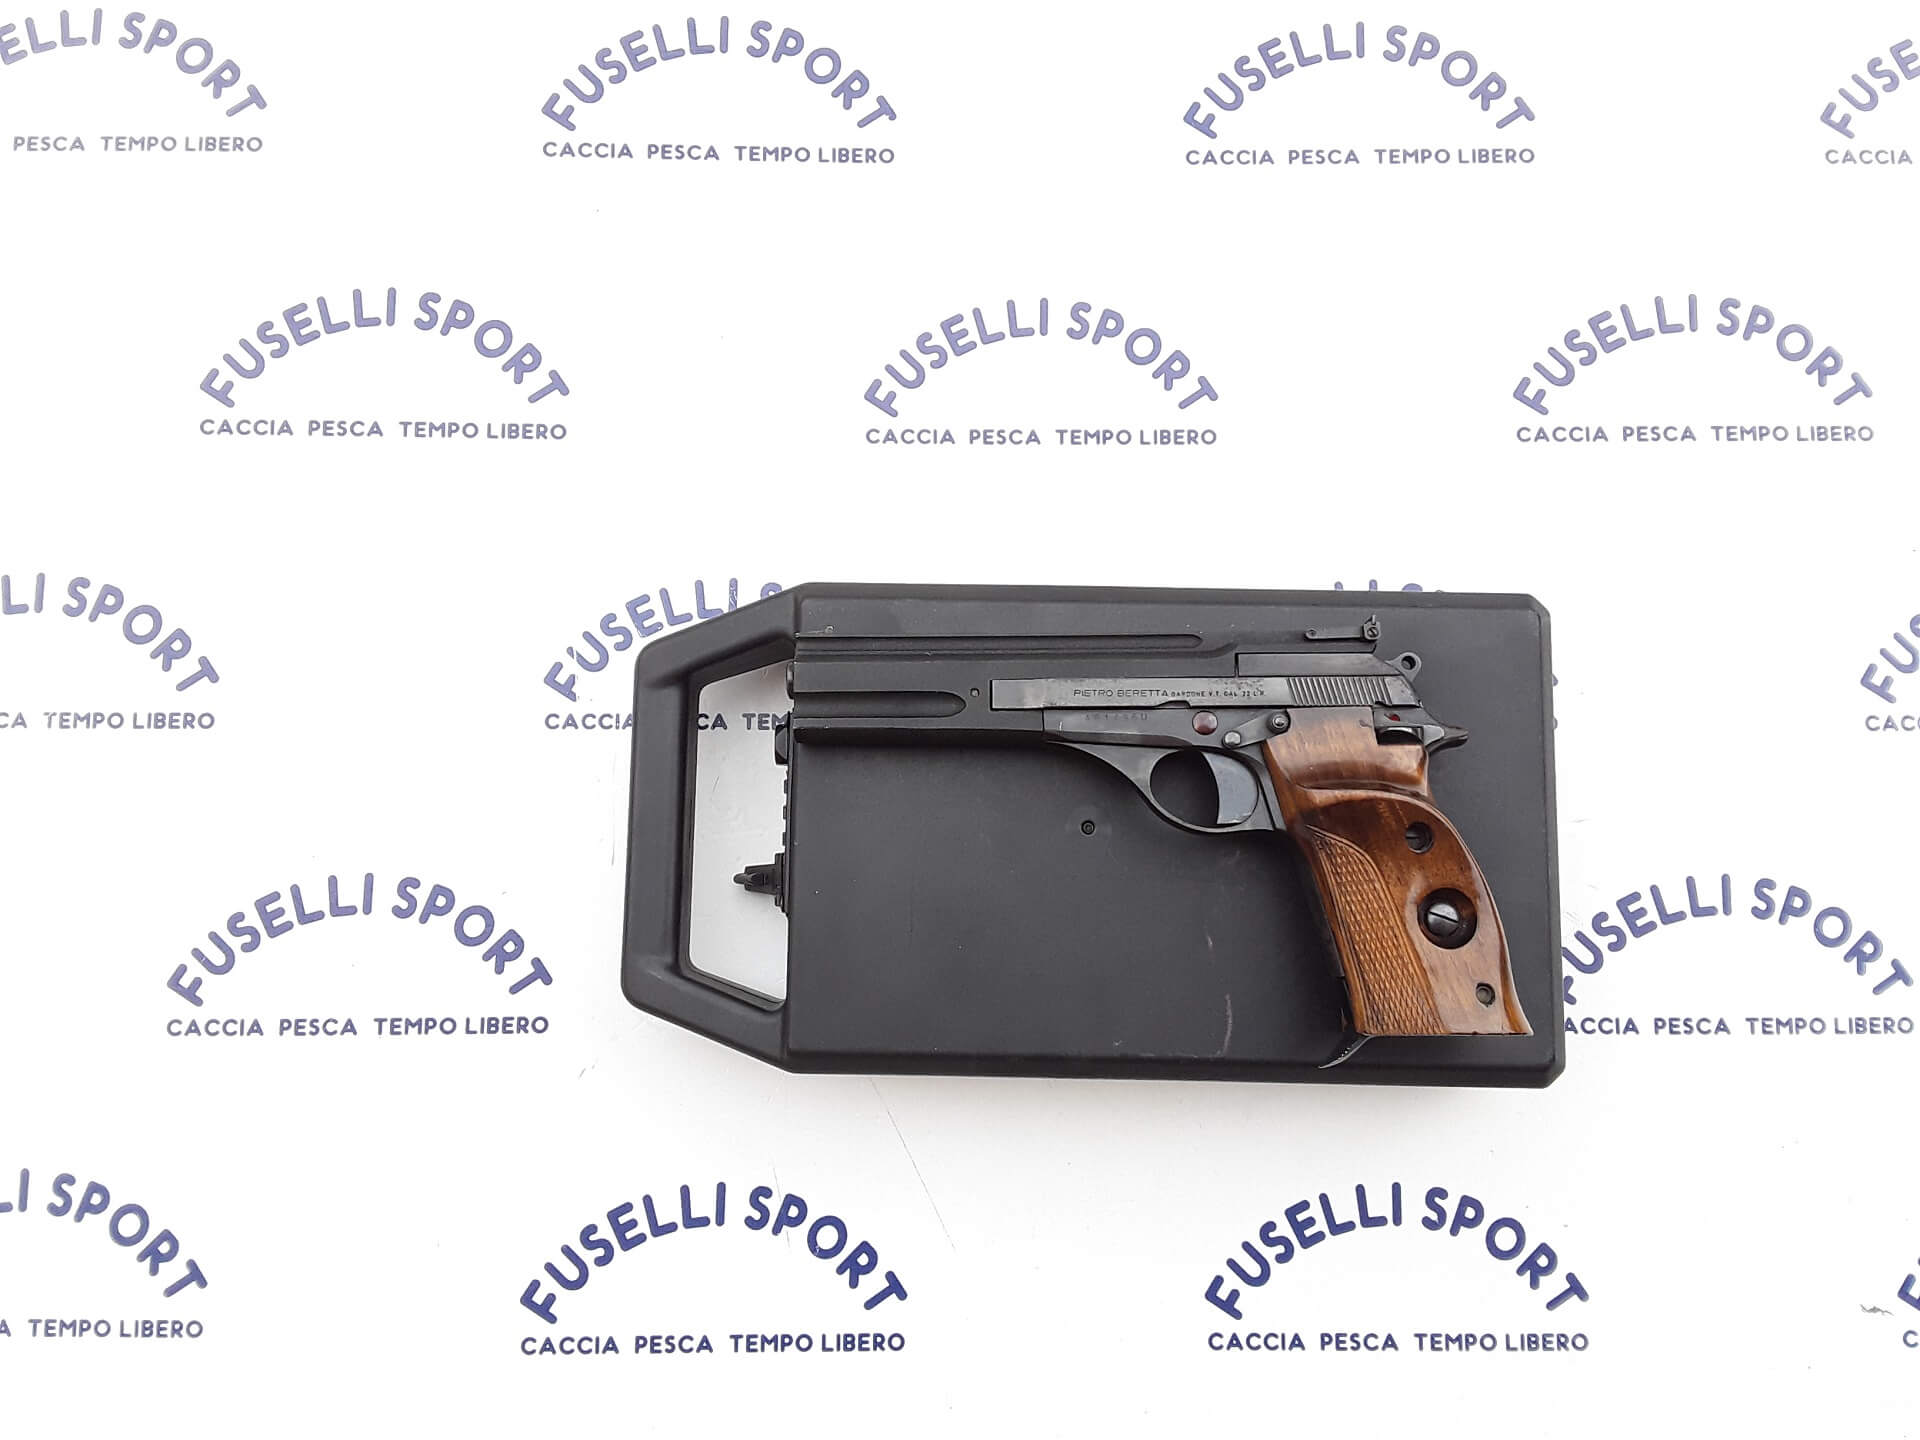 Pistola semiautomatica Beretta Cal 22 LR modello 76 con valigetta €350